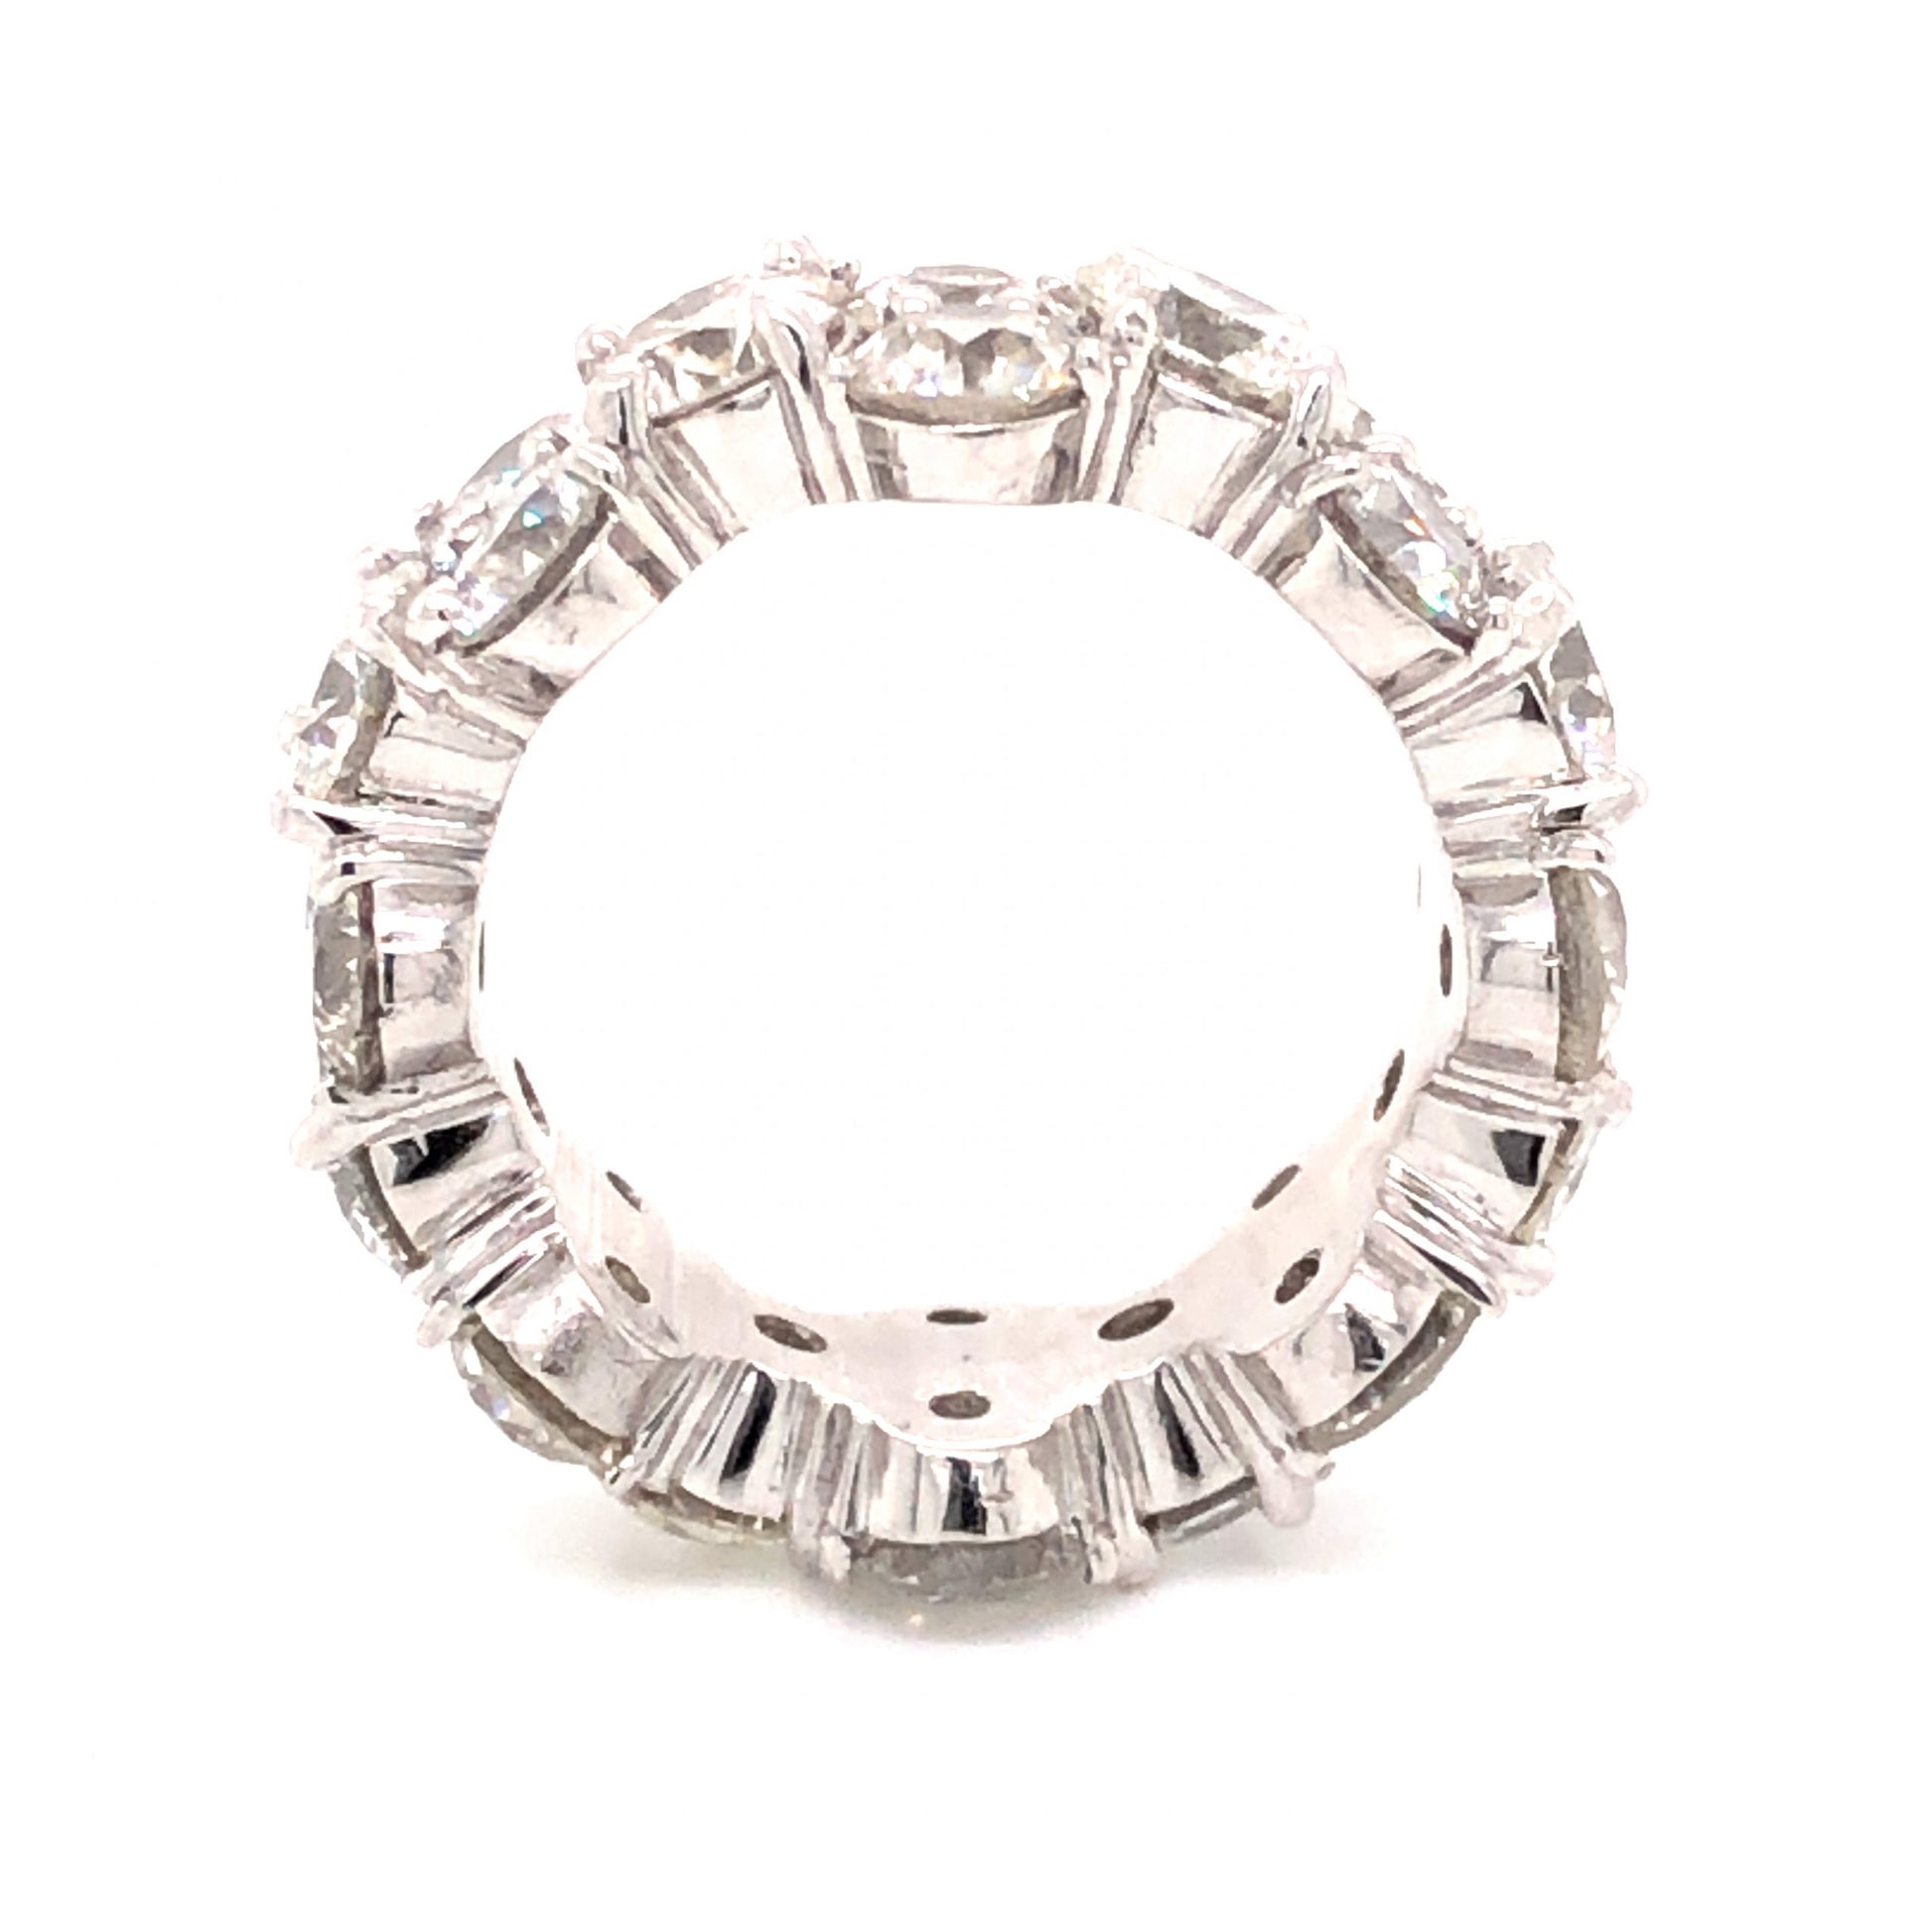 9.92 Round Brilliant Cut Diamond Eternity Ring in Platinum